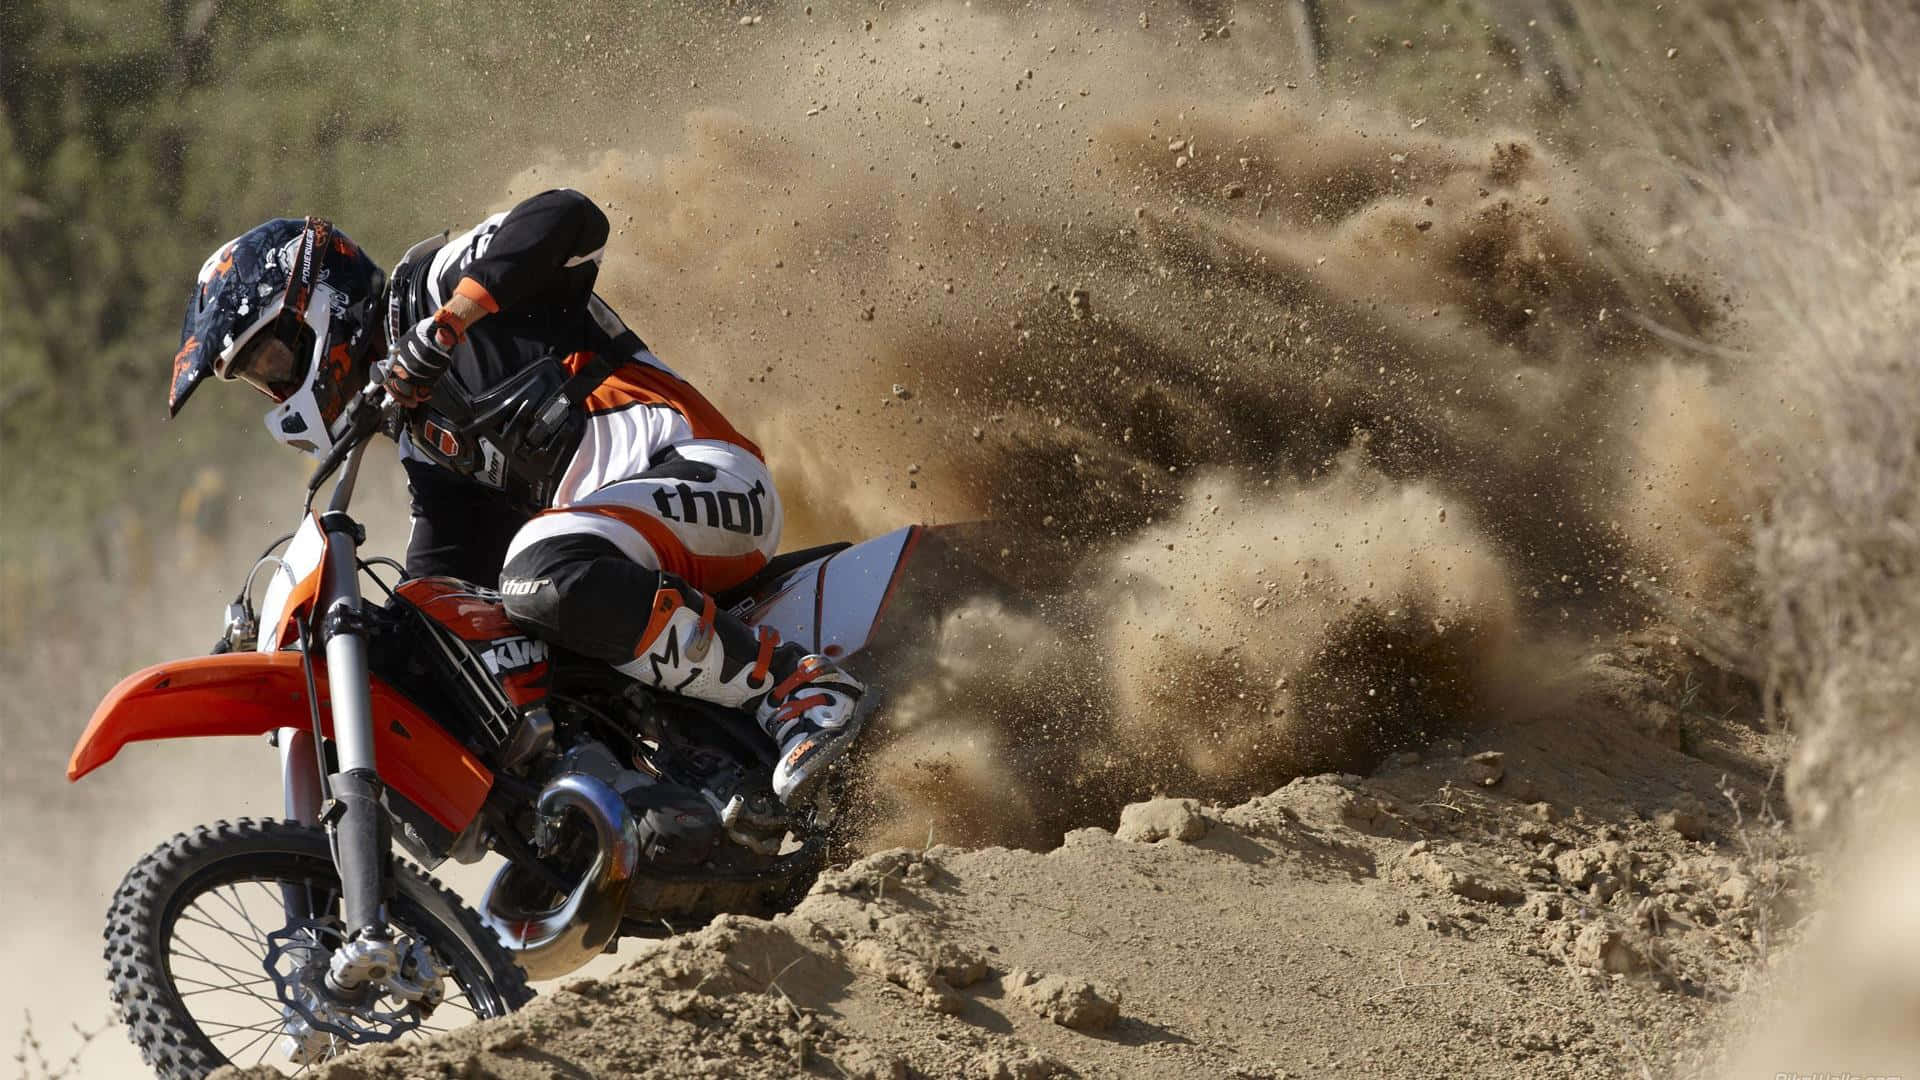 Motocross Racer Catching Air Off a Dirt Jump